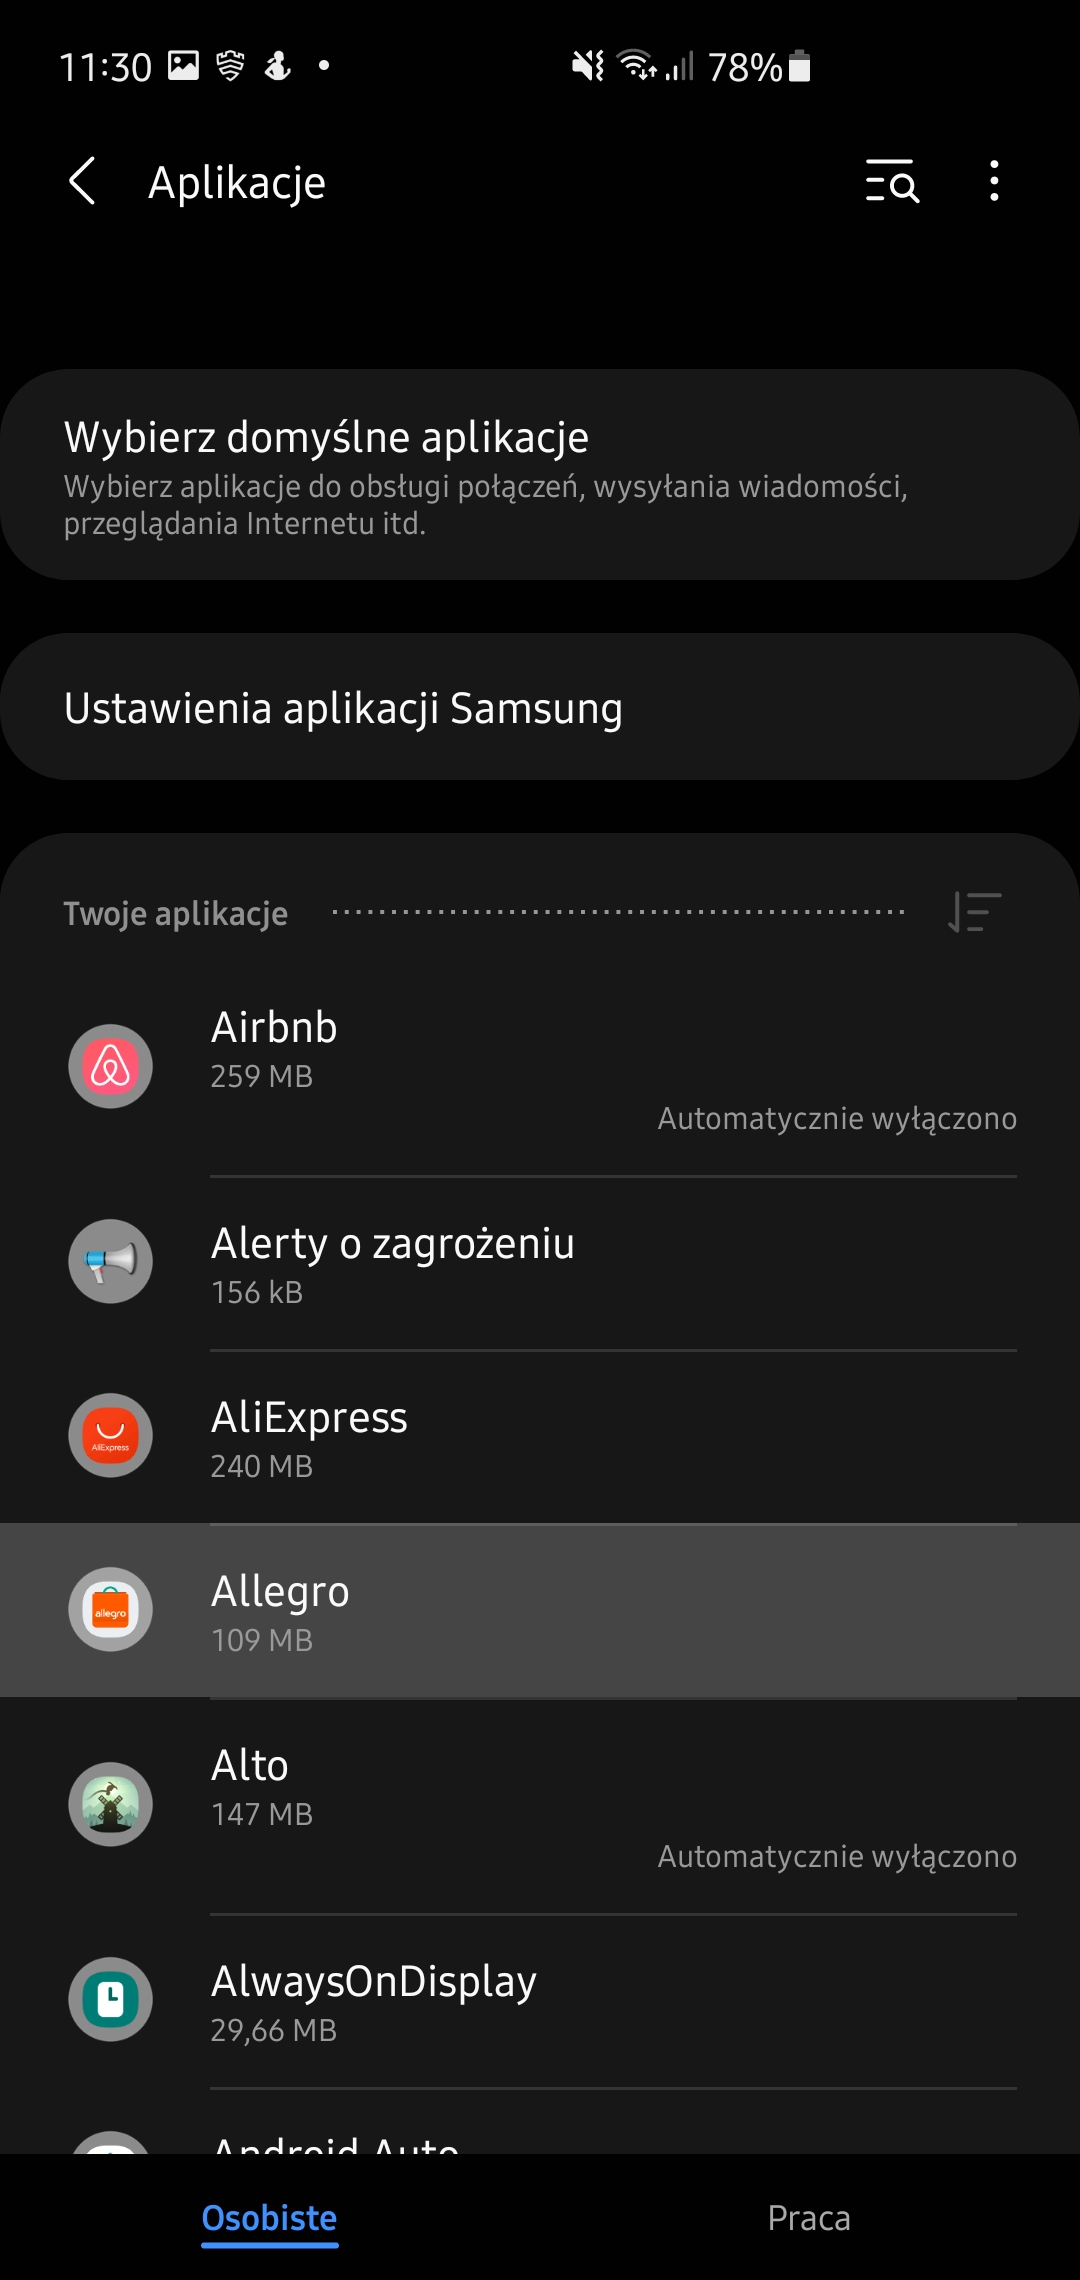 Samsung One UI- aplikacje w tle